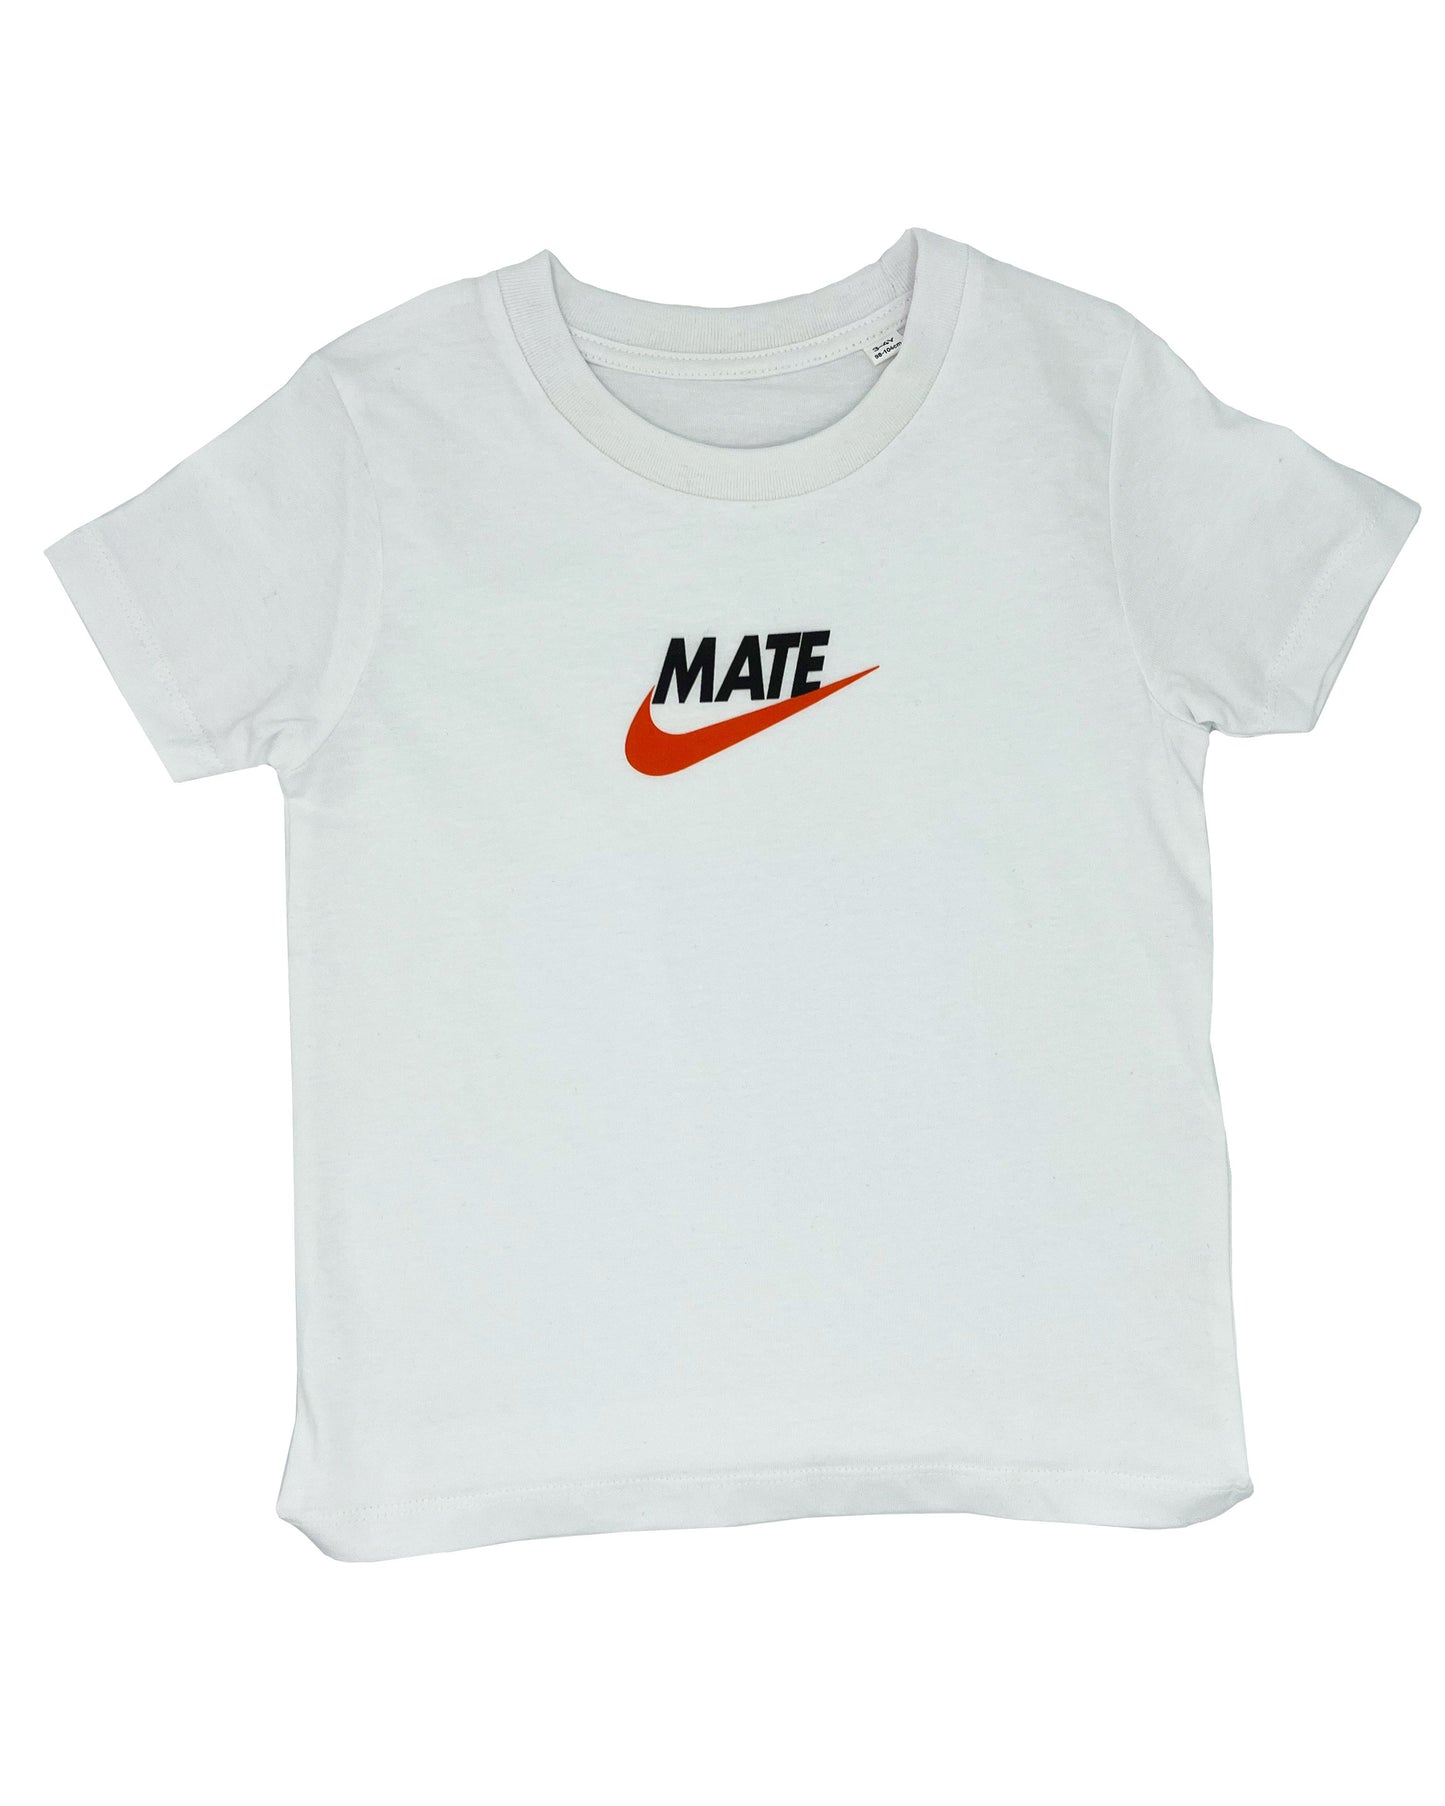 MATE CAN DO IT - Short Sleeve T Shirt - Little Mate Adventures